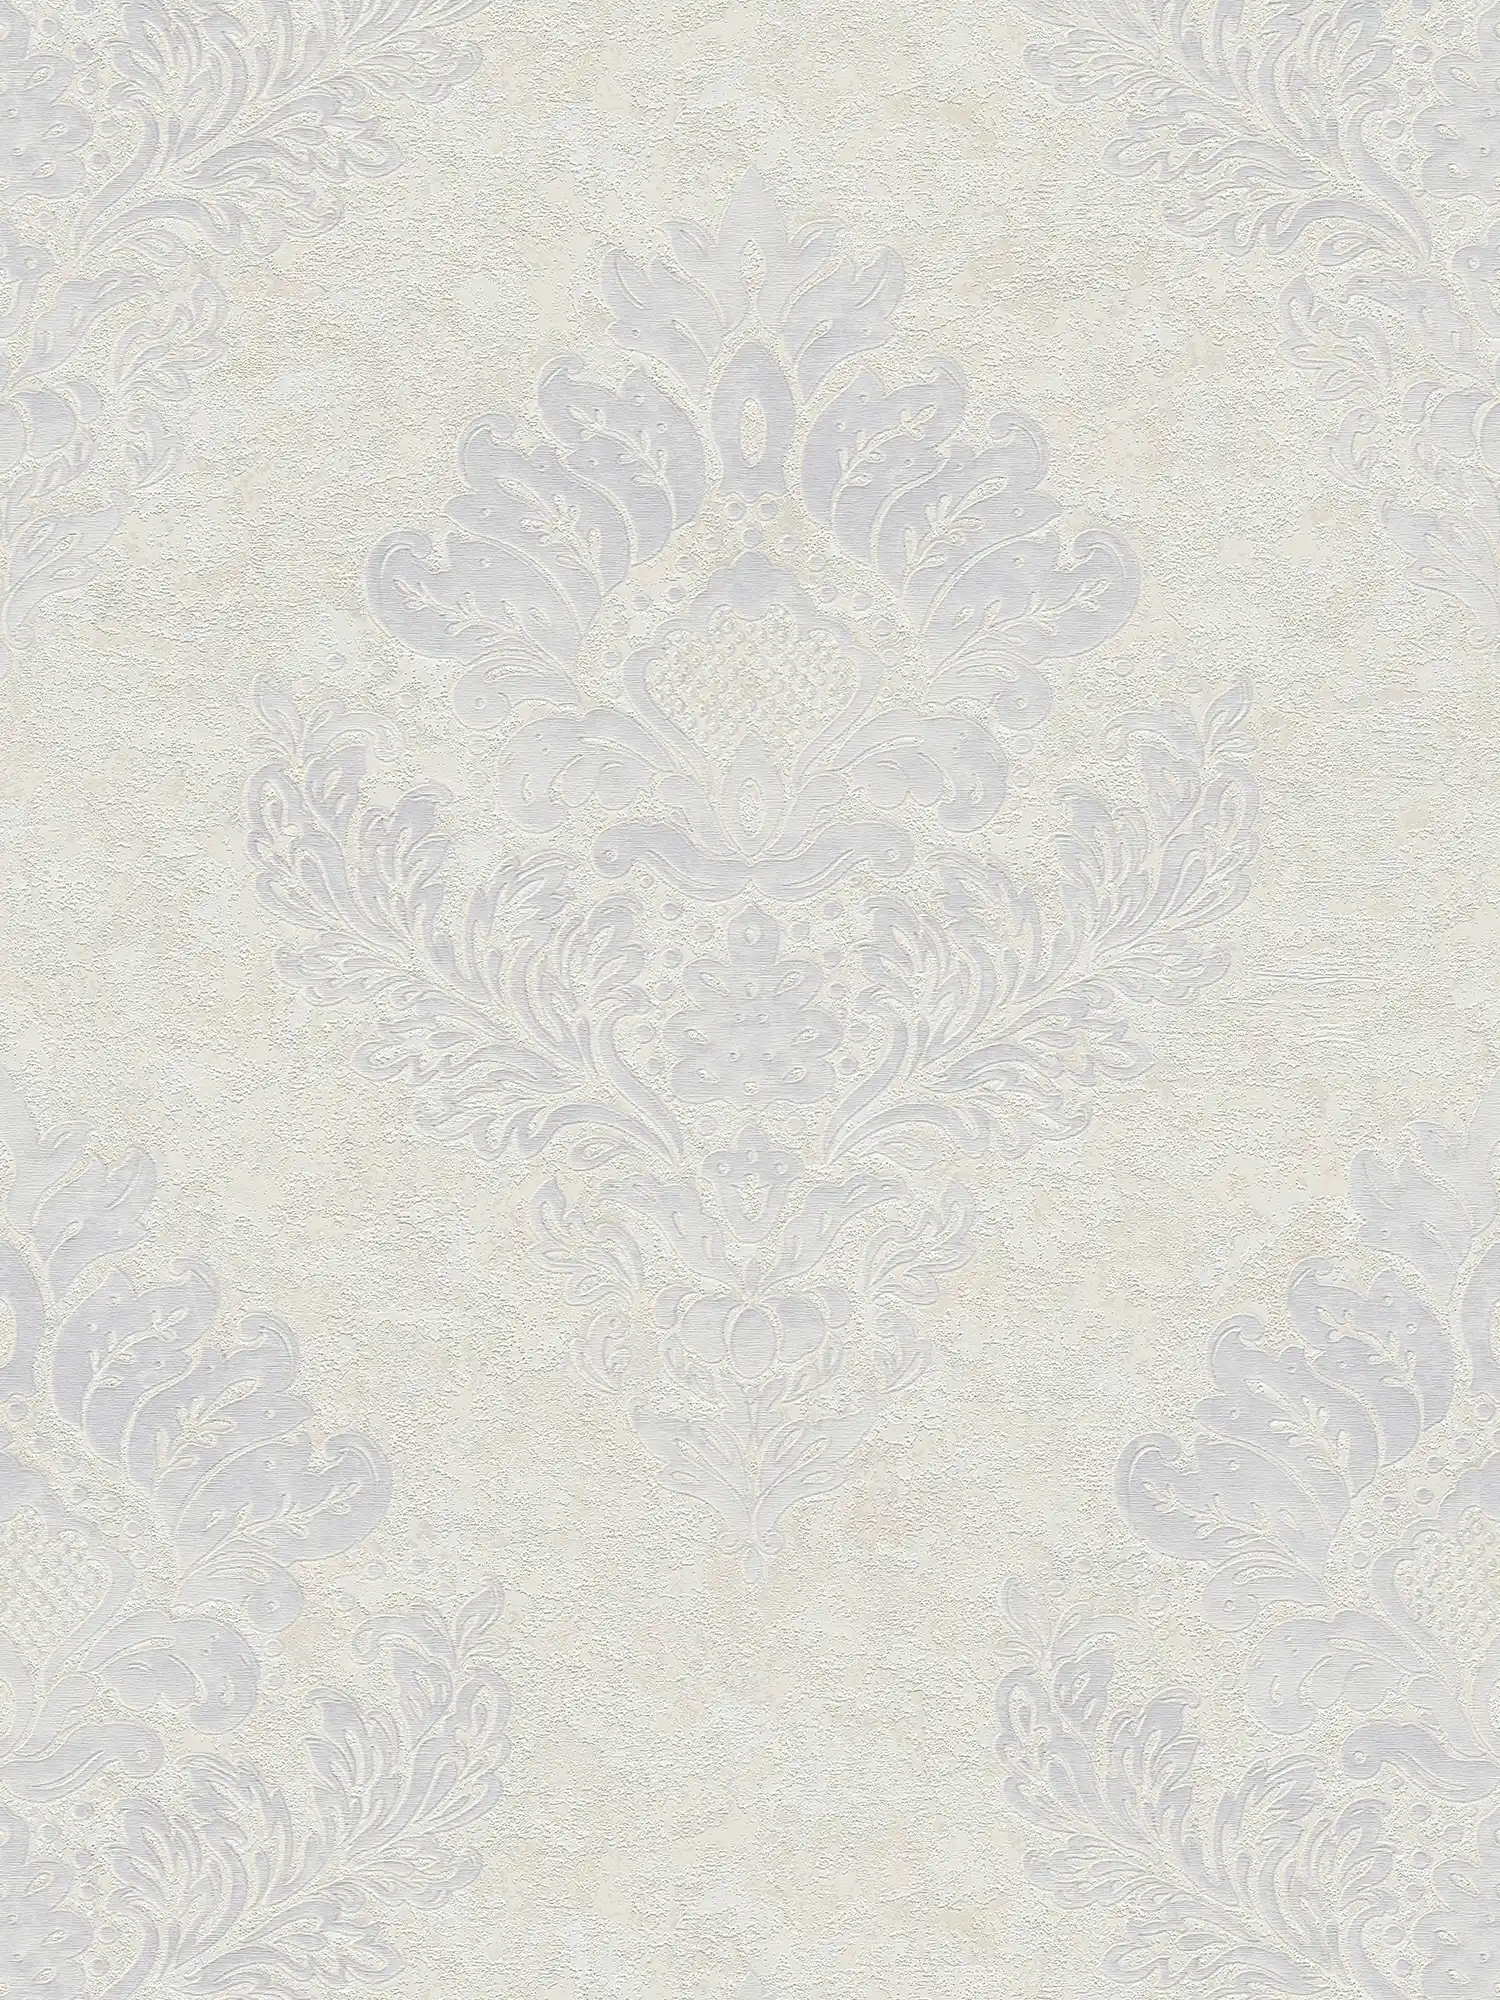 Carta da parati in tessuto non tessuto con ornamenti floreali e lucentezza metallica - beige, grigio, bianco
